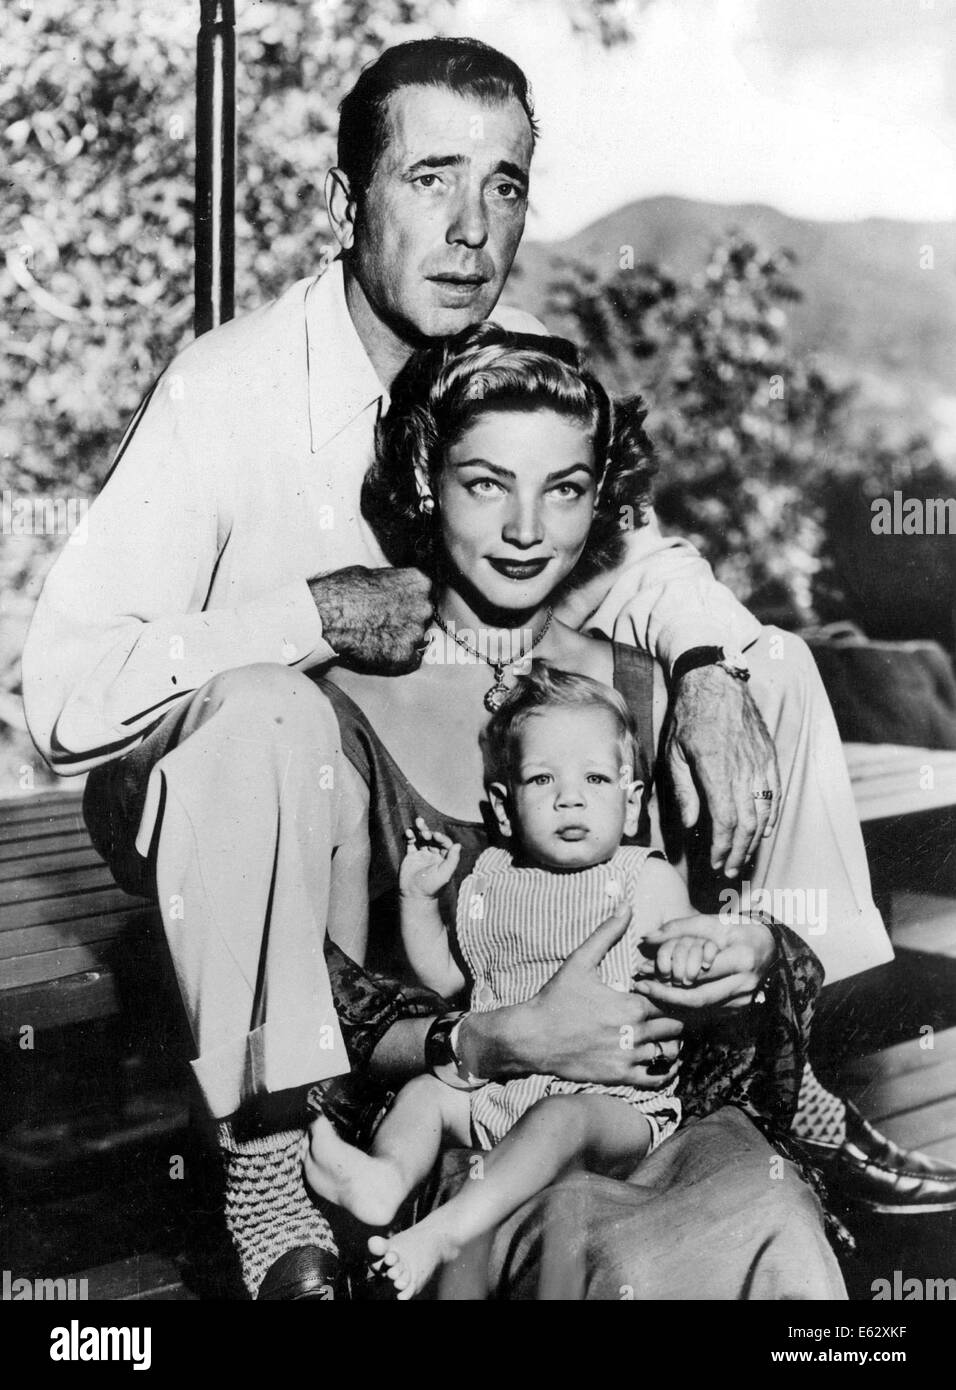 LAUREN BACALL (Sept. 16, 1924 - 12. August 2014) geboren Betty Joan Perske, war eine US-amerikanische Schauspielerin und Model, bekannt für ihre unverwechselbaren rauchigen Stimme und schwül sieht. Sie tauchte erstmals als Hauptdarstellerin in der Humphrey Bogart-Film-Noir-Filme von 1940, sowie komödiantische Rollen in "Wie einen Millionär zu heiraten" (1953) und "Gestaltung Frau" (1957). Bacall habe auch Broadway-Musicals, gewann Tony Awards für "Applaus" im Jahr 1970 und "Woman of the Year" im Jahr 1981. Ihre Leistung in dem Film "The Mirror Has Two Faces" (1996) brachte ihr eine Golden Globe Award und eine Oscar-Nominierung. Stockfoto